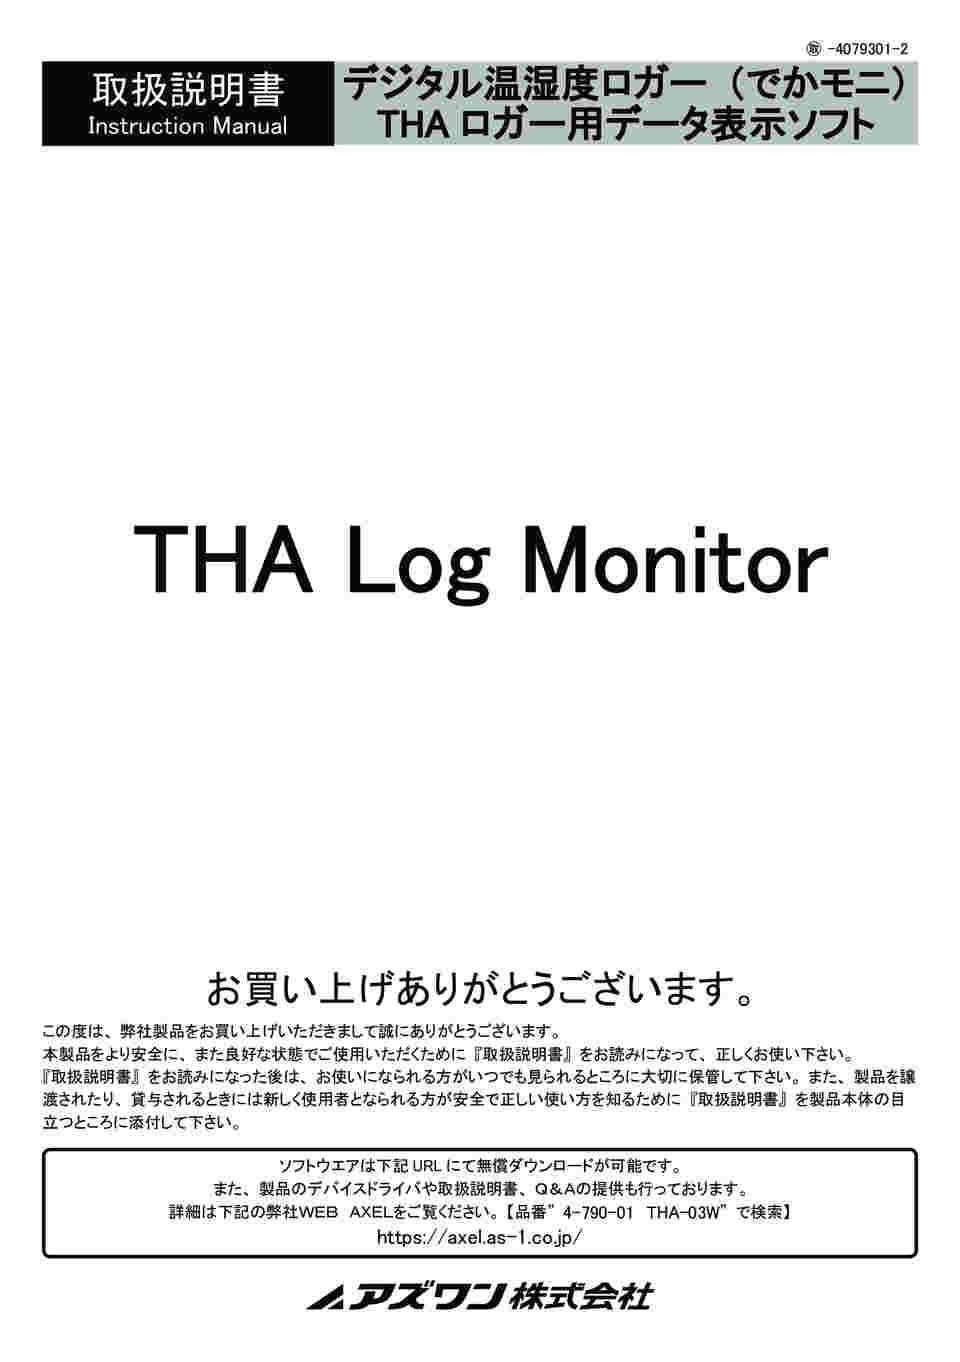 4-793-01 デジタル温湿度ロガー(でかモニ・メモリタイプ) THA-02L 【AXEL】 アズワン